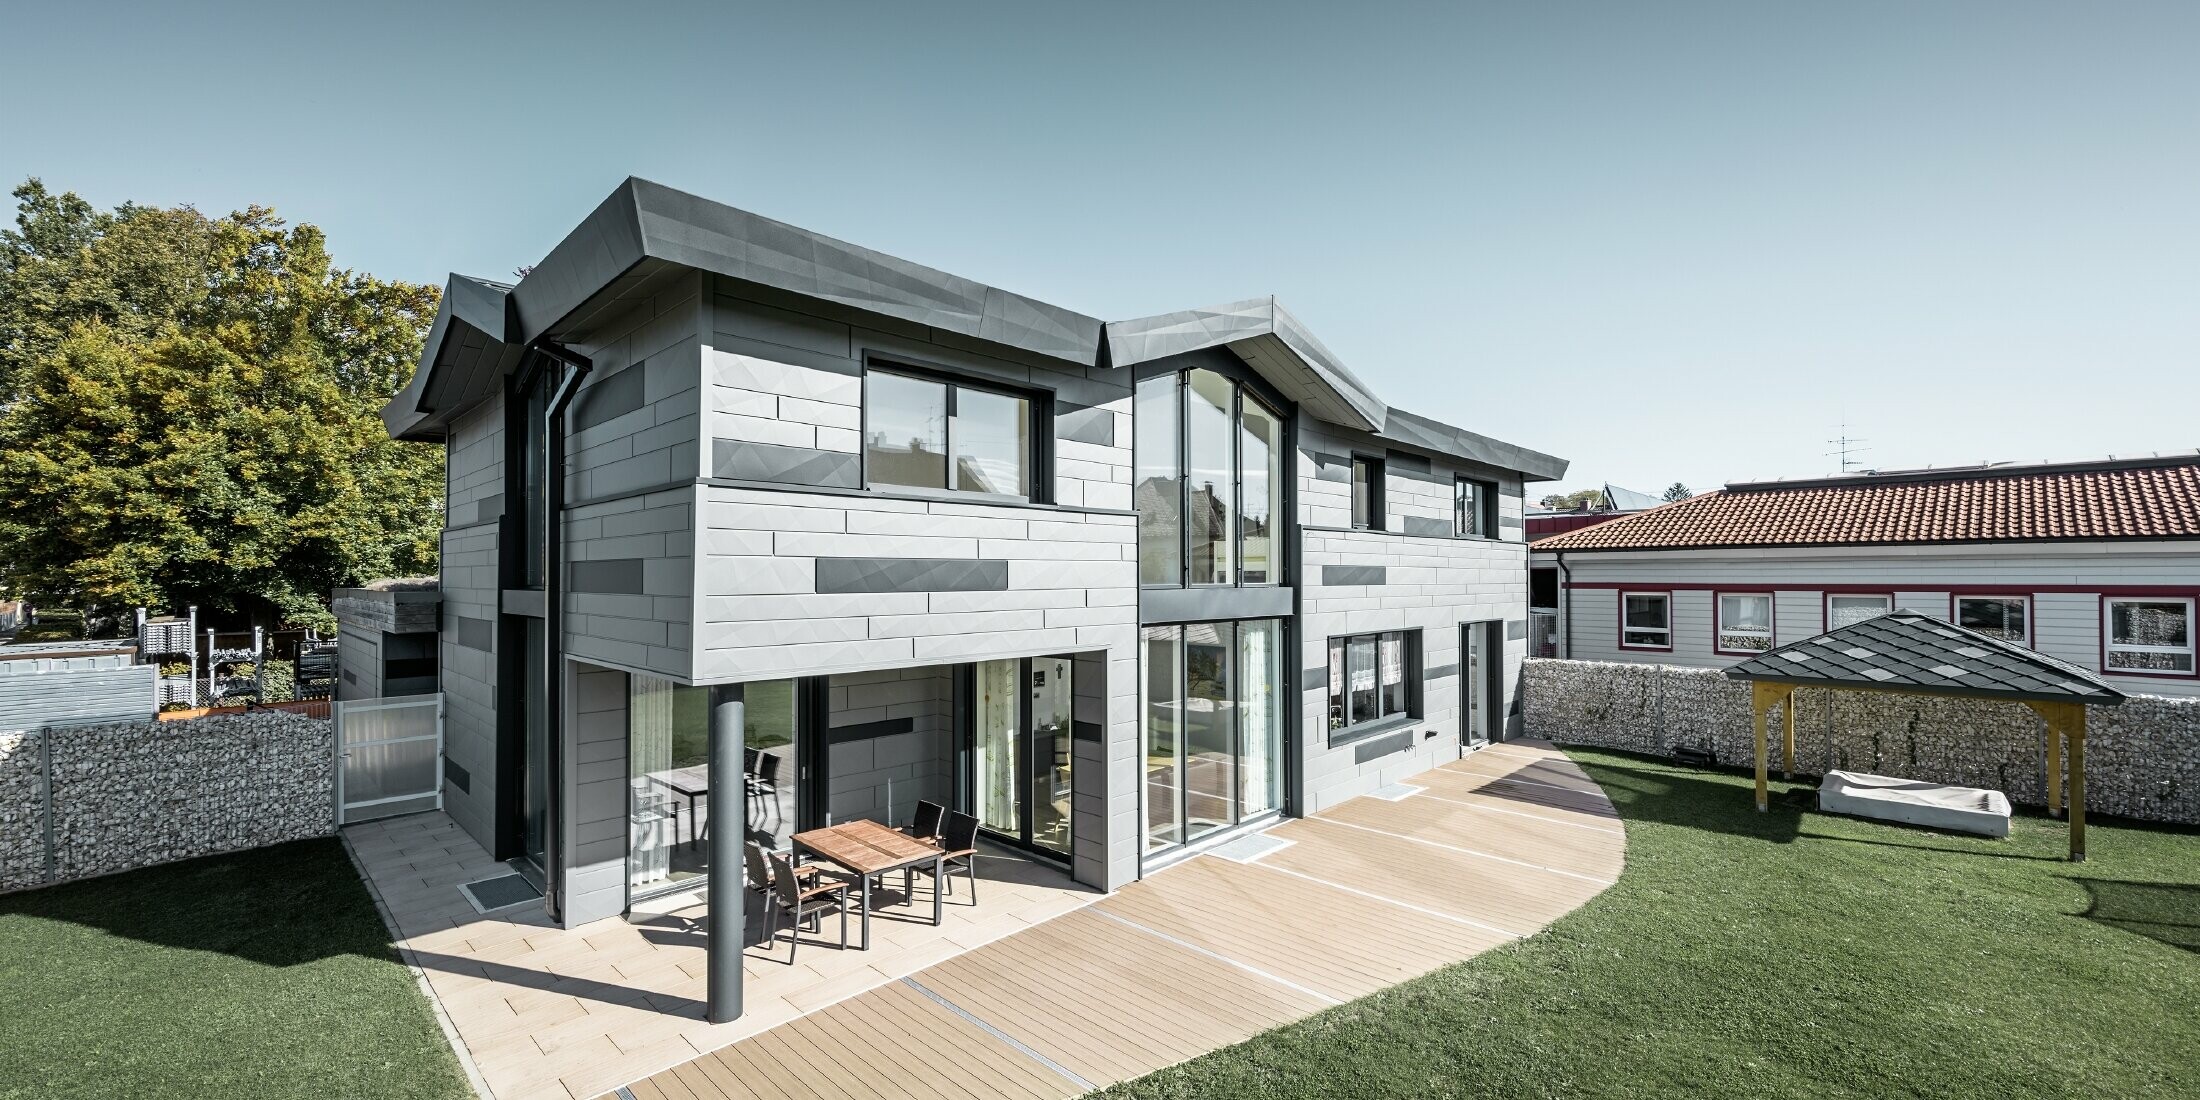 Moderní rodinný dům v Türkheimu se zajímavou fasádou z fasádních lamel FX.12 v barvách P.10 světle šedé a antracitové.